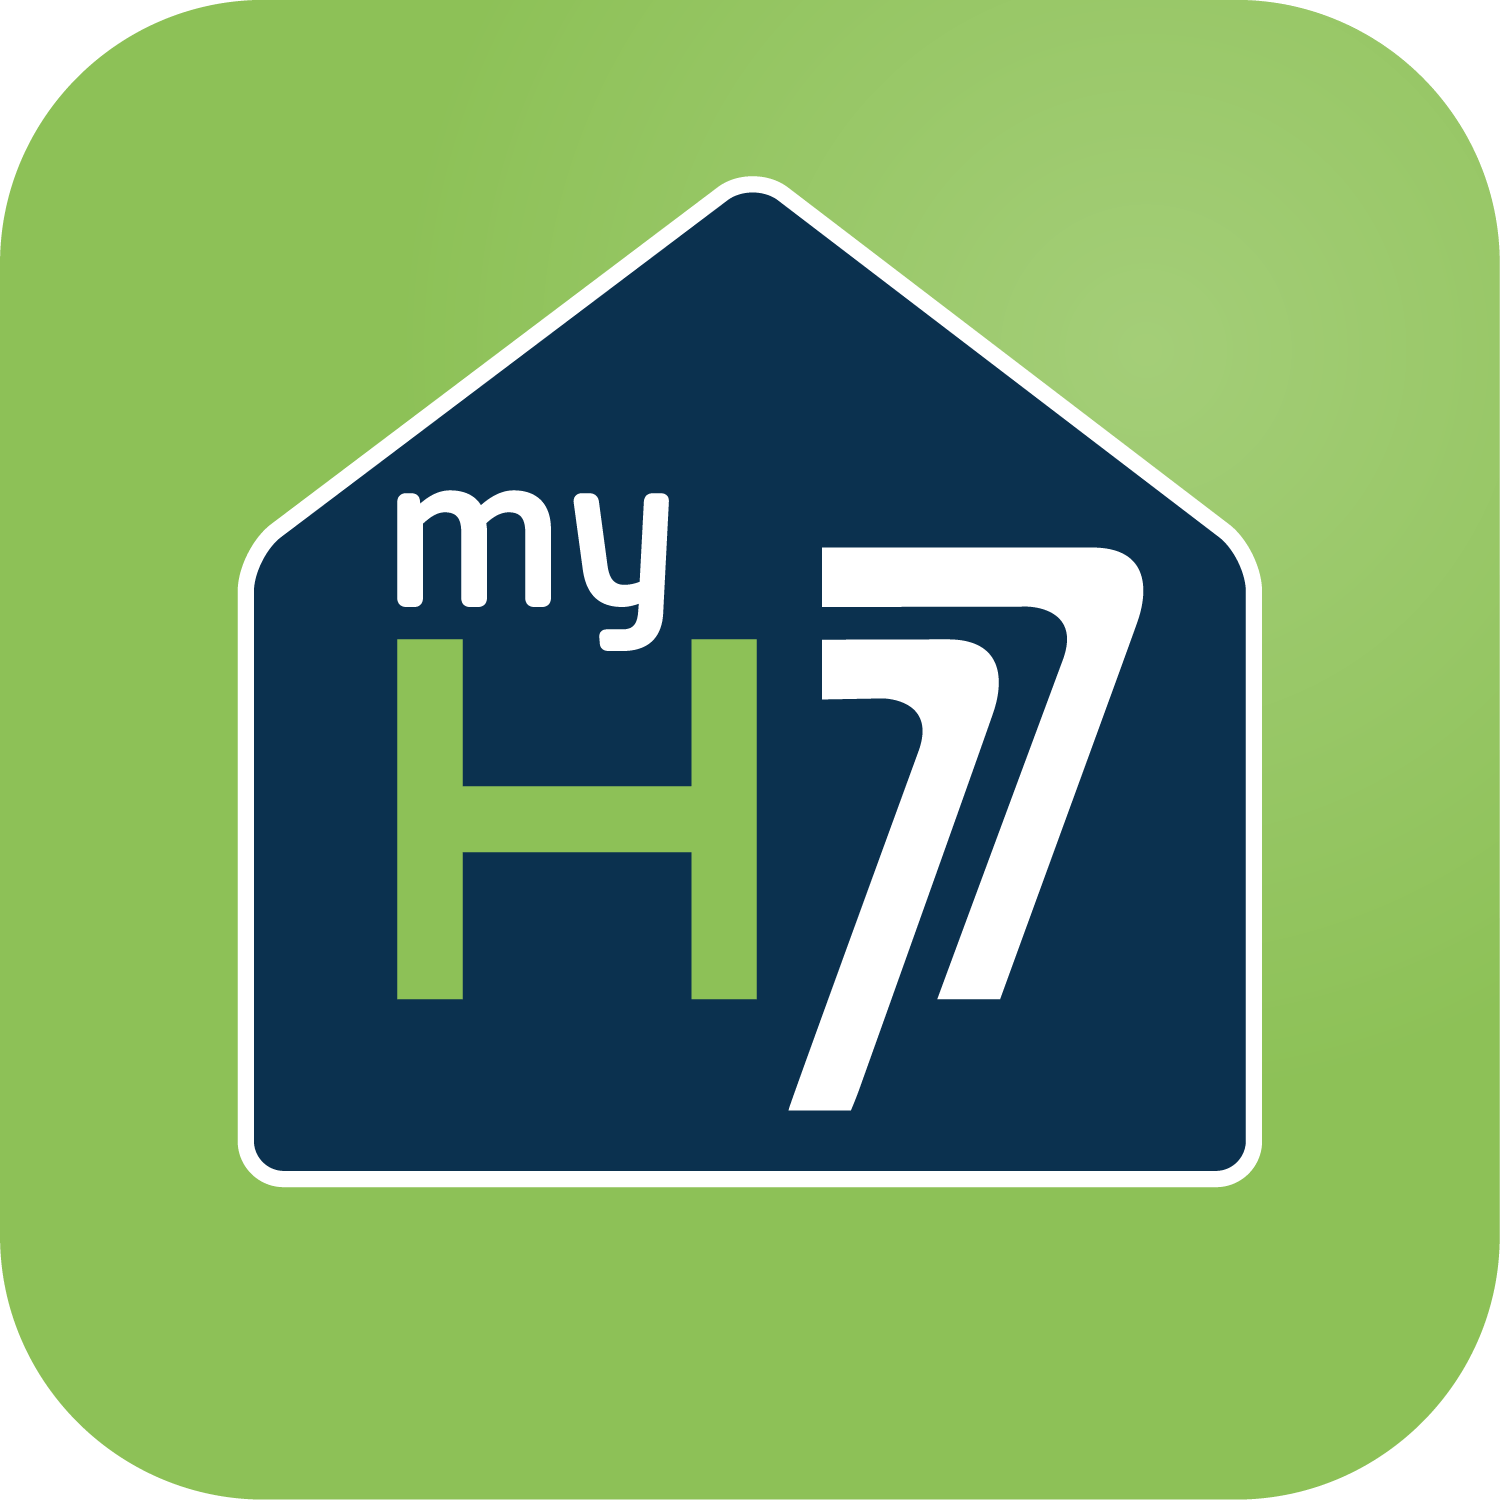 my-H77 - extranet locataire habitat77